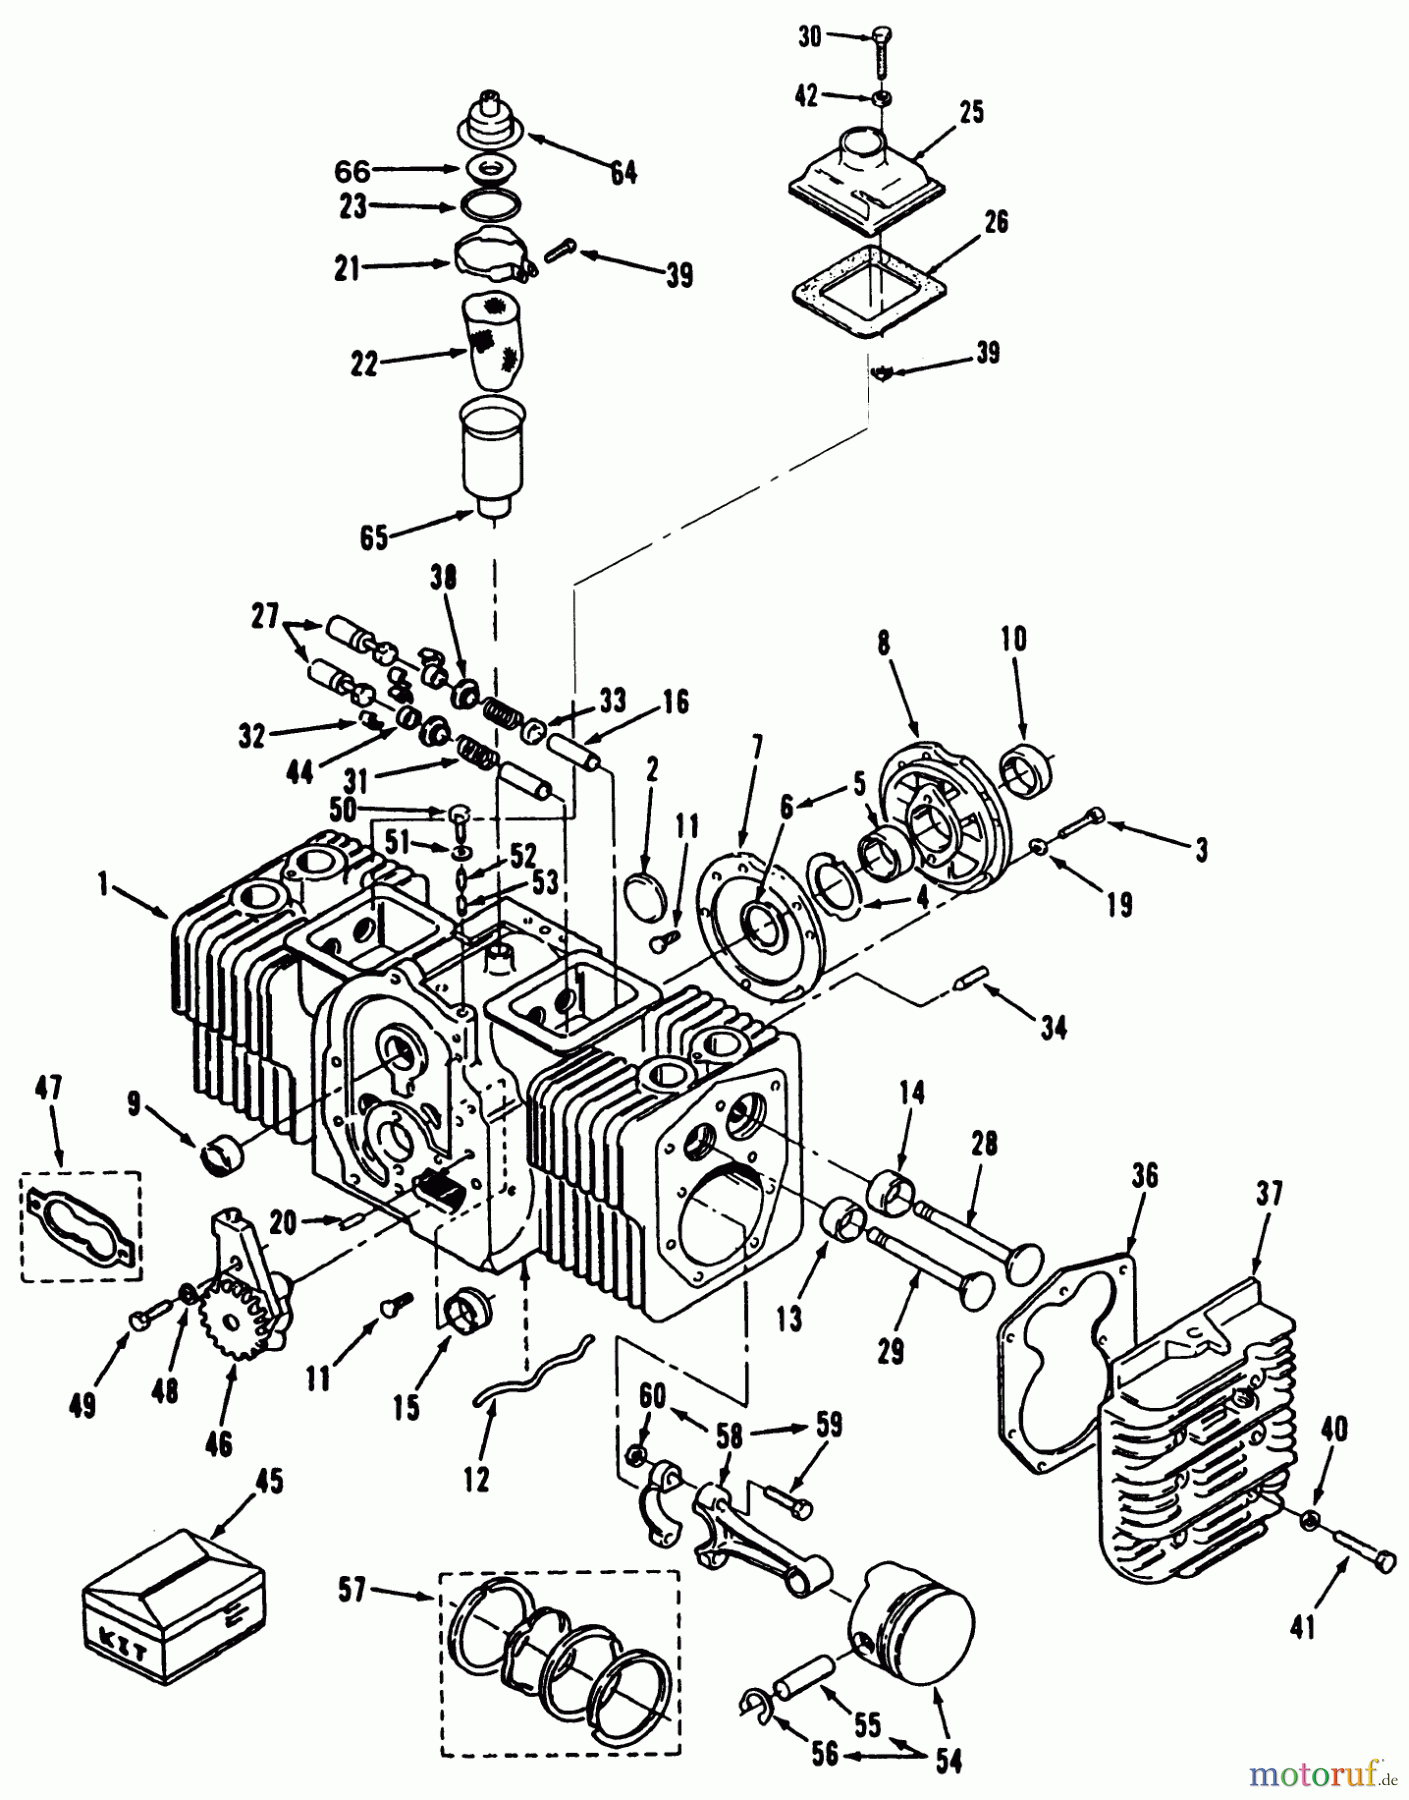  Toro Neu Mowers, Lawn & Garden Tractor Seite 1 51-16OE02 (416-H) - Toro 416-H Garden Tractor, 1992 (2000001-2999999) ENGINE POWER PLUS CYLINDER BLOCK